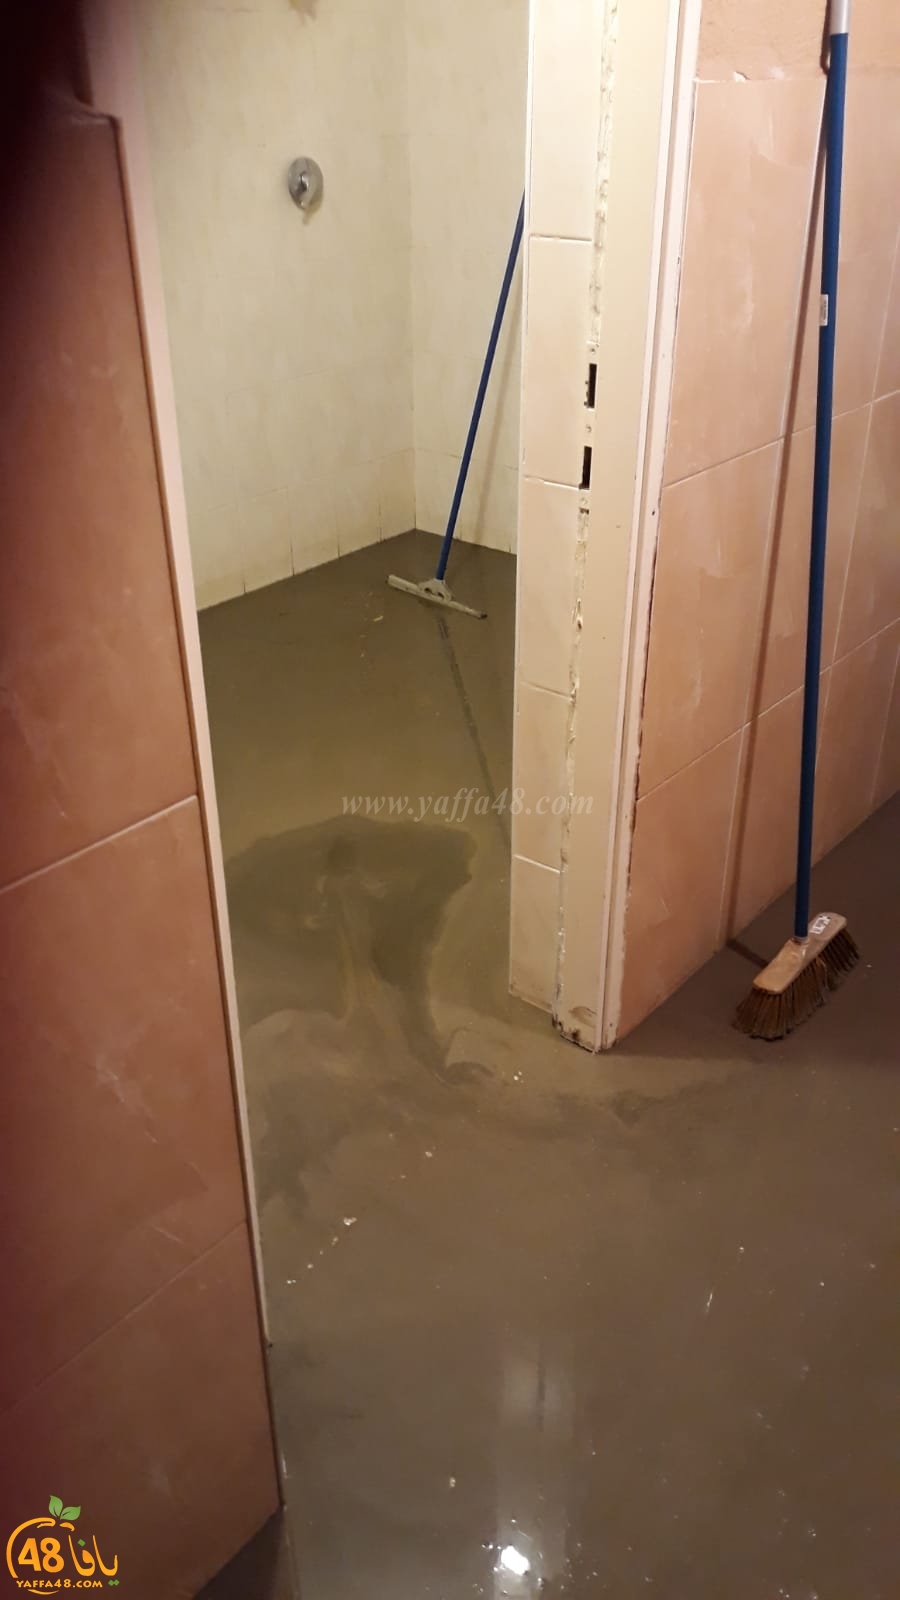 صور: مياه الصرف الصحّي تغمر بيت أحد المواطنين في الرملة 